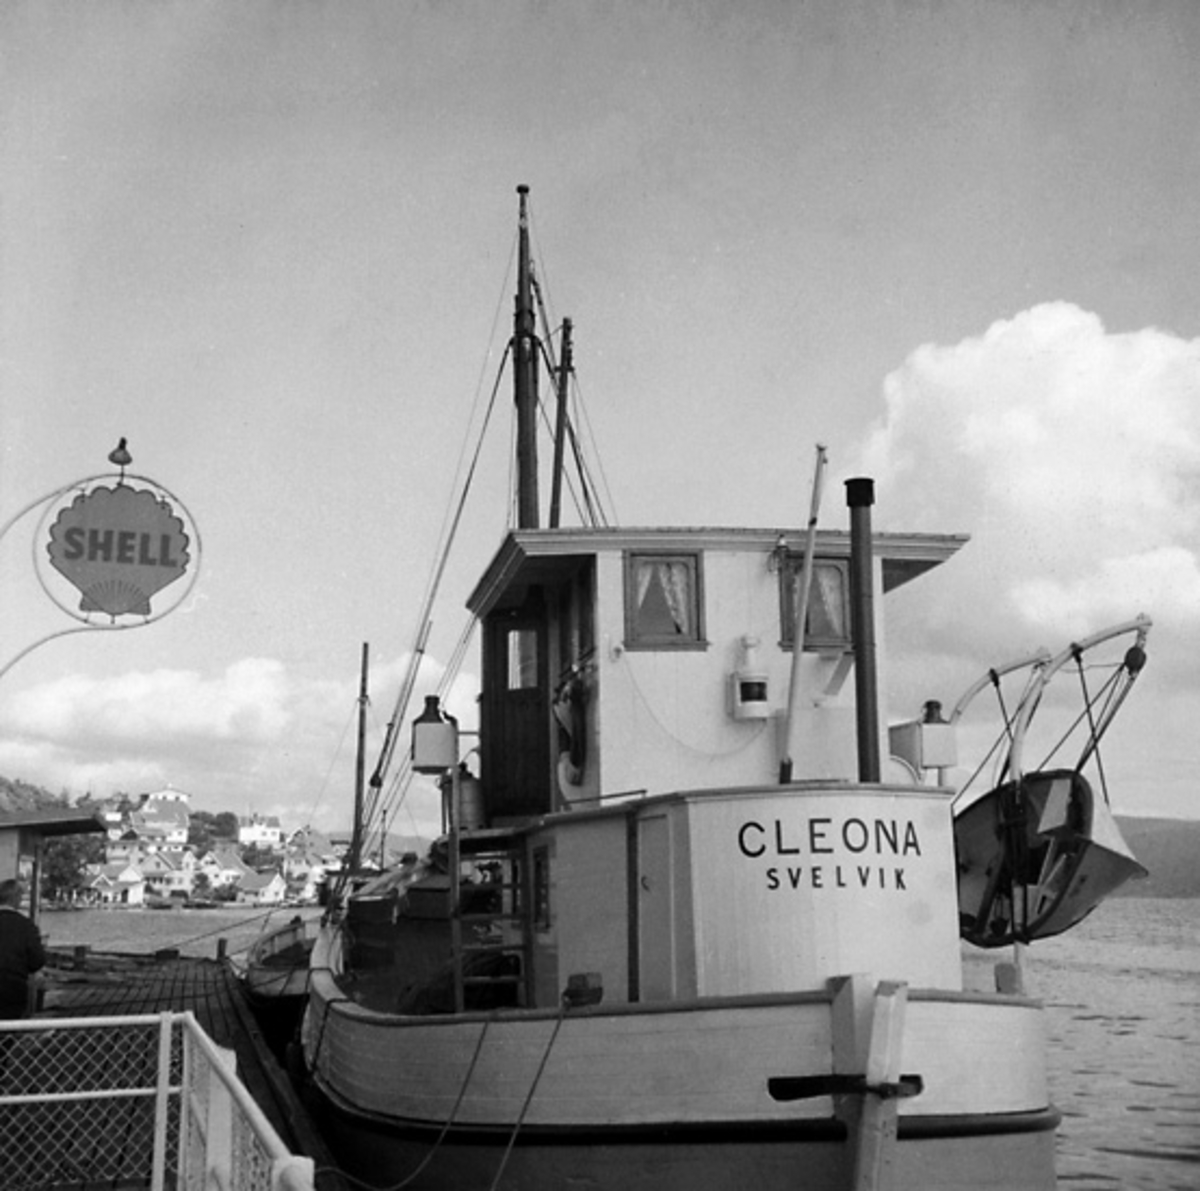 Skrivet på baksidan: M/jagt Cleona af Svelvik. Svelvik 8/8 1966. A. 3180.
Stämplat på baksidan: Henning Henningsen, museumsinspektör, dr. phil.